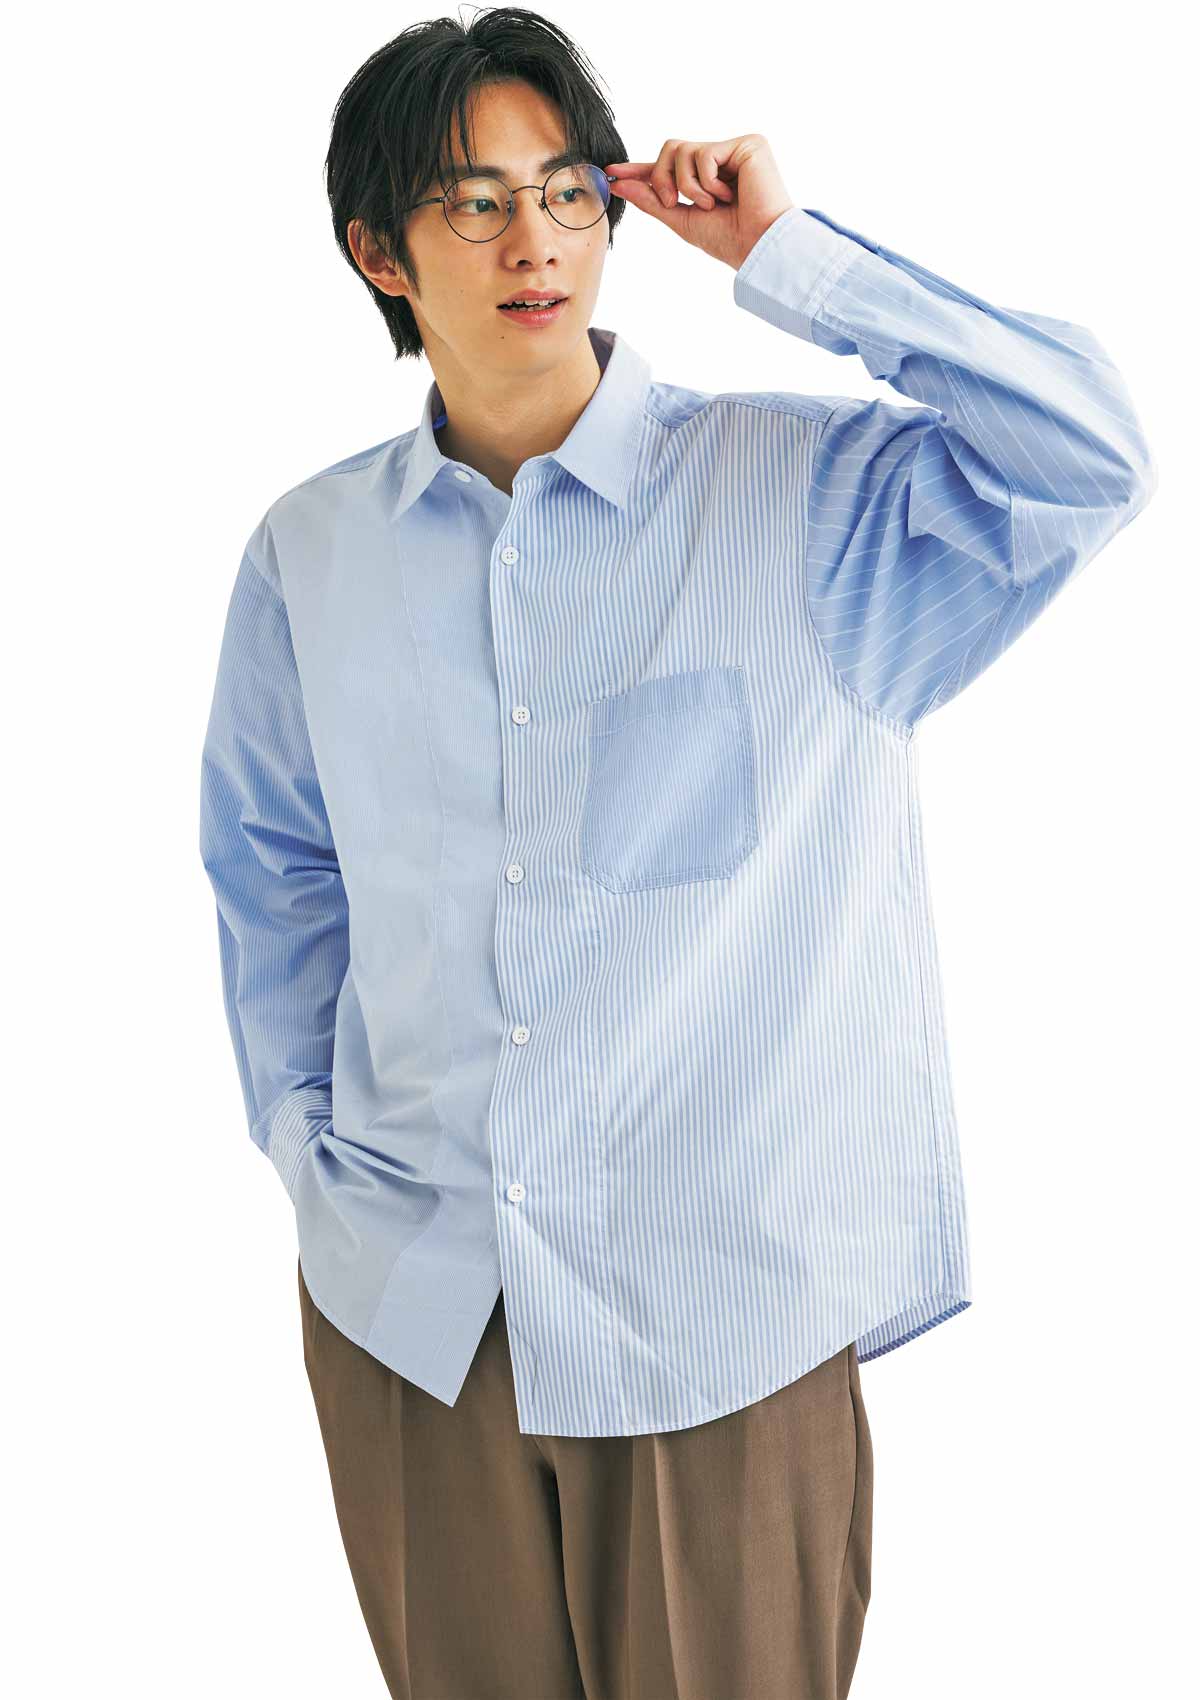 清潔感男子 22年春は青ストライプシャツを主役に ファッション Fineboys Online